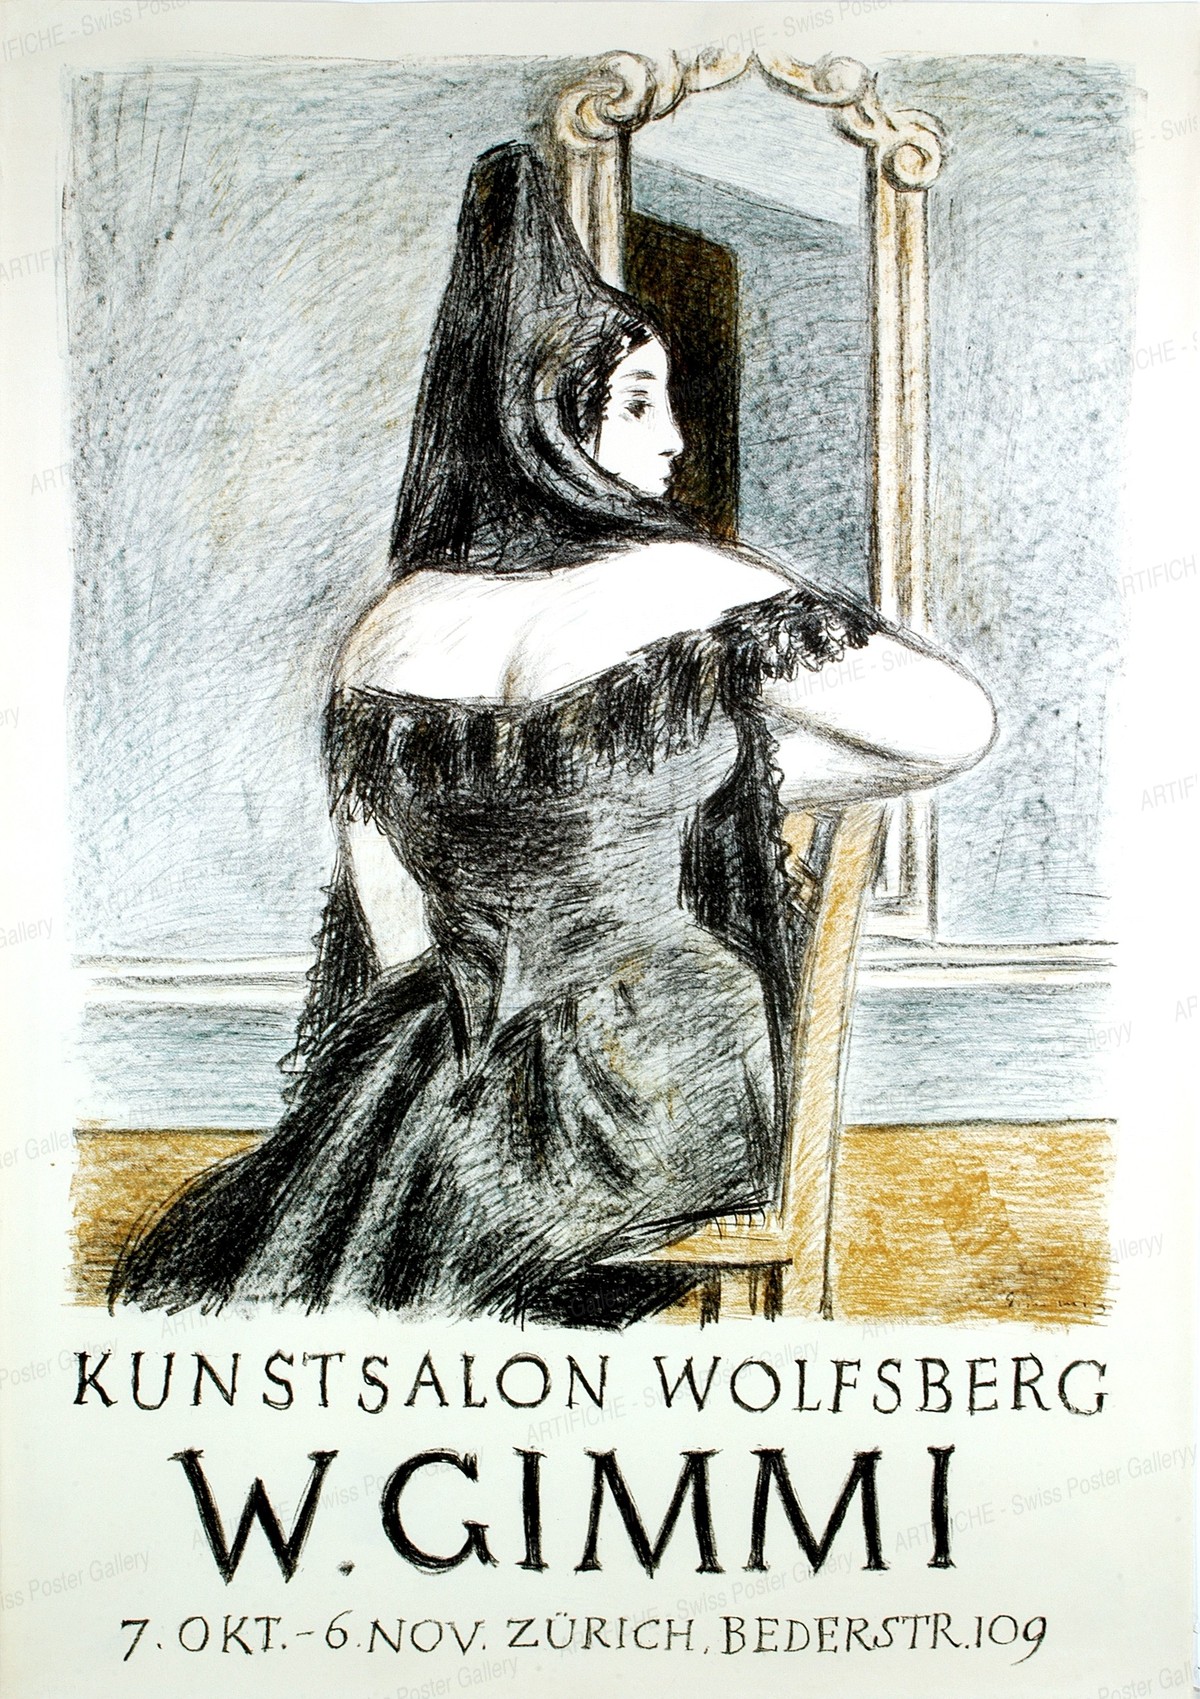 Kunstsalon Wolfsberg „W. Gimmi “, Artist unknown